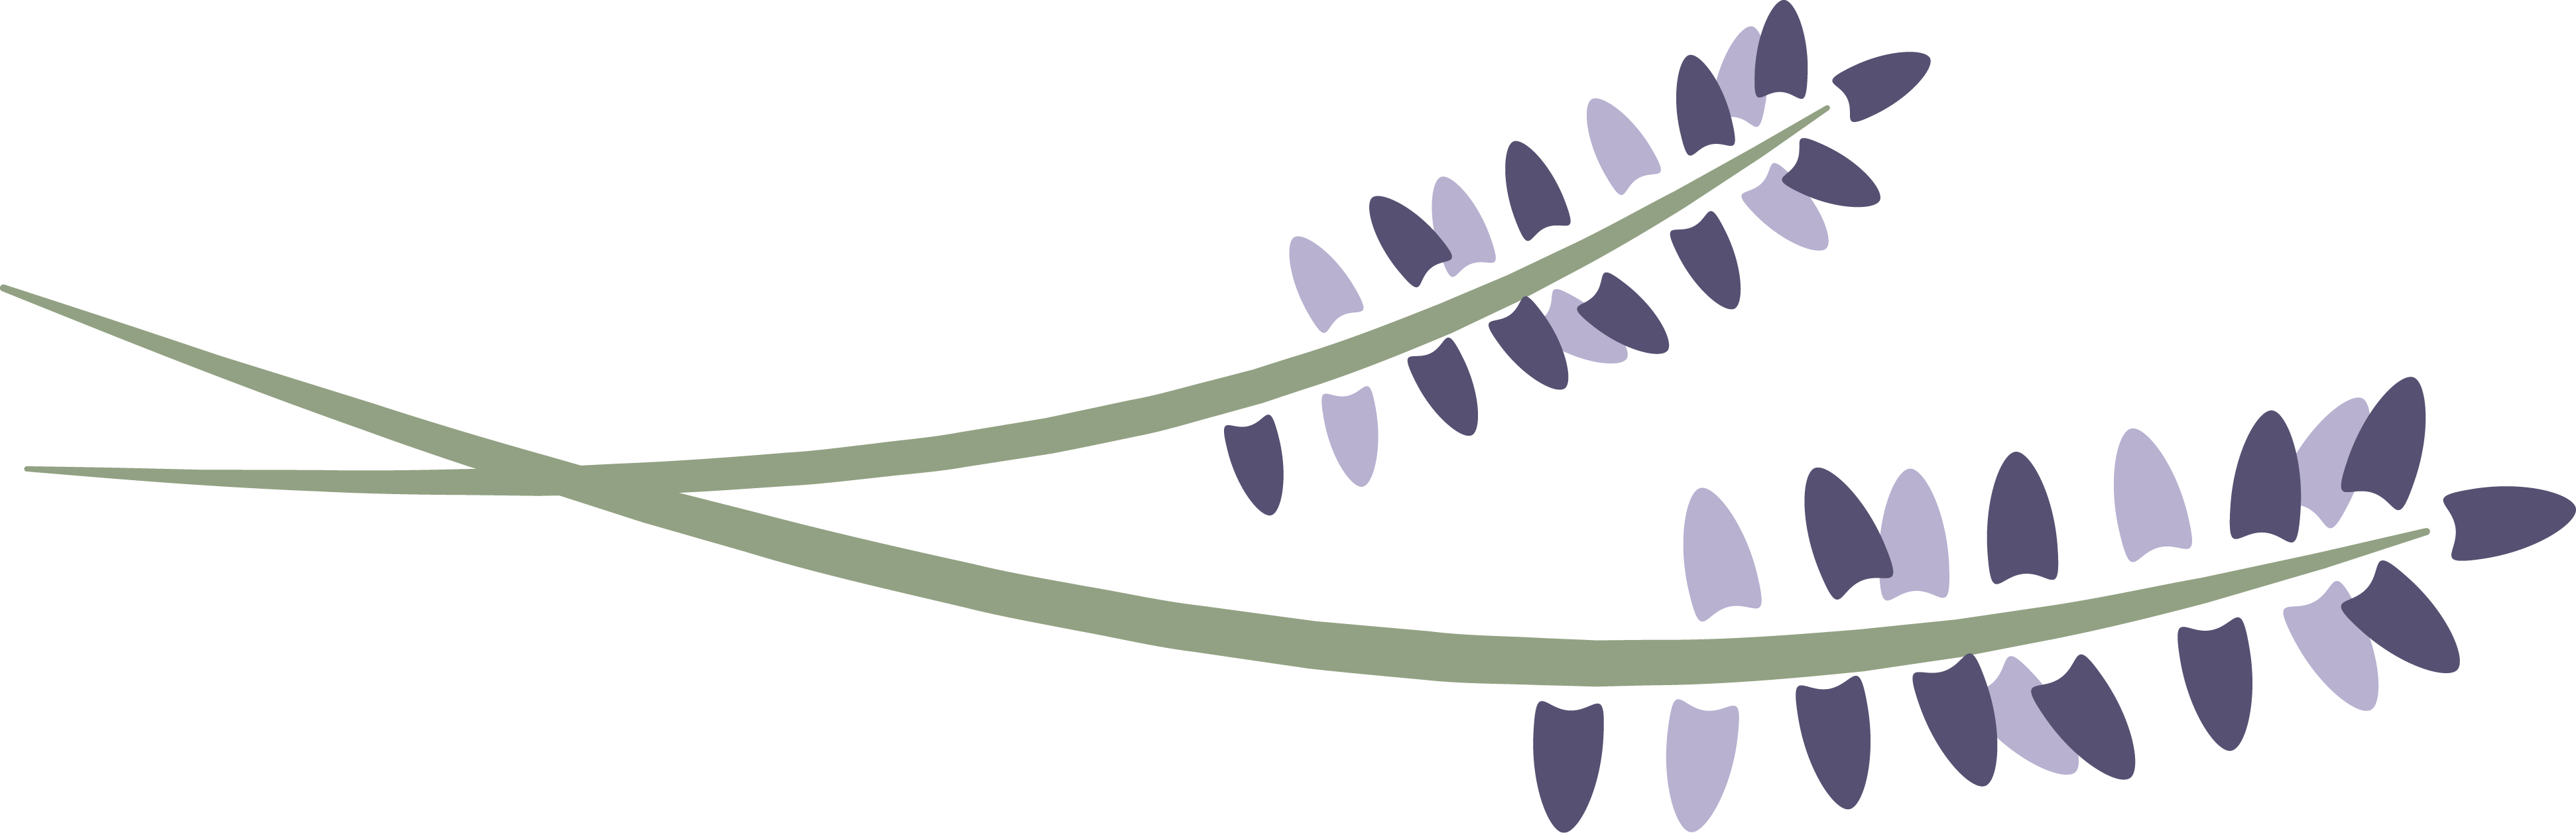 lavender clipart lavender plant